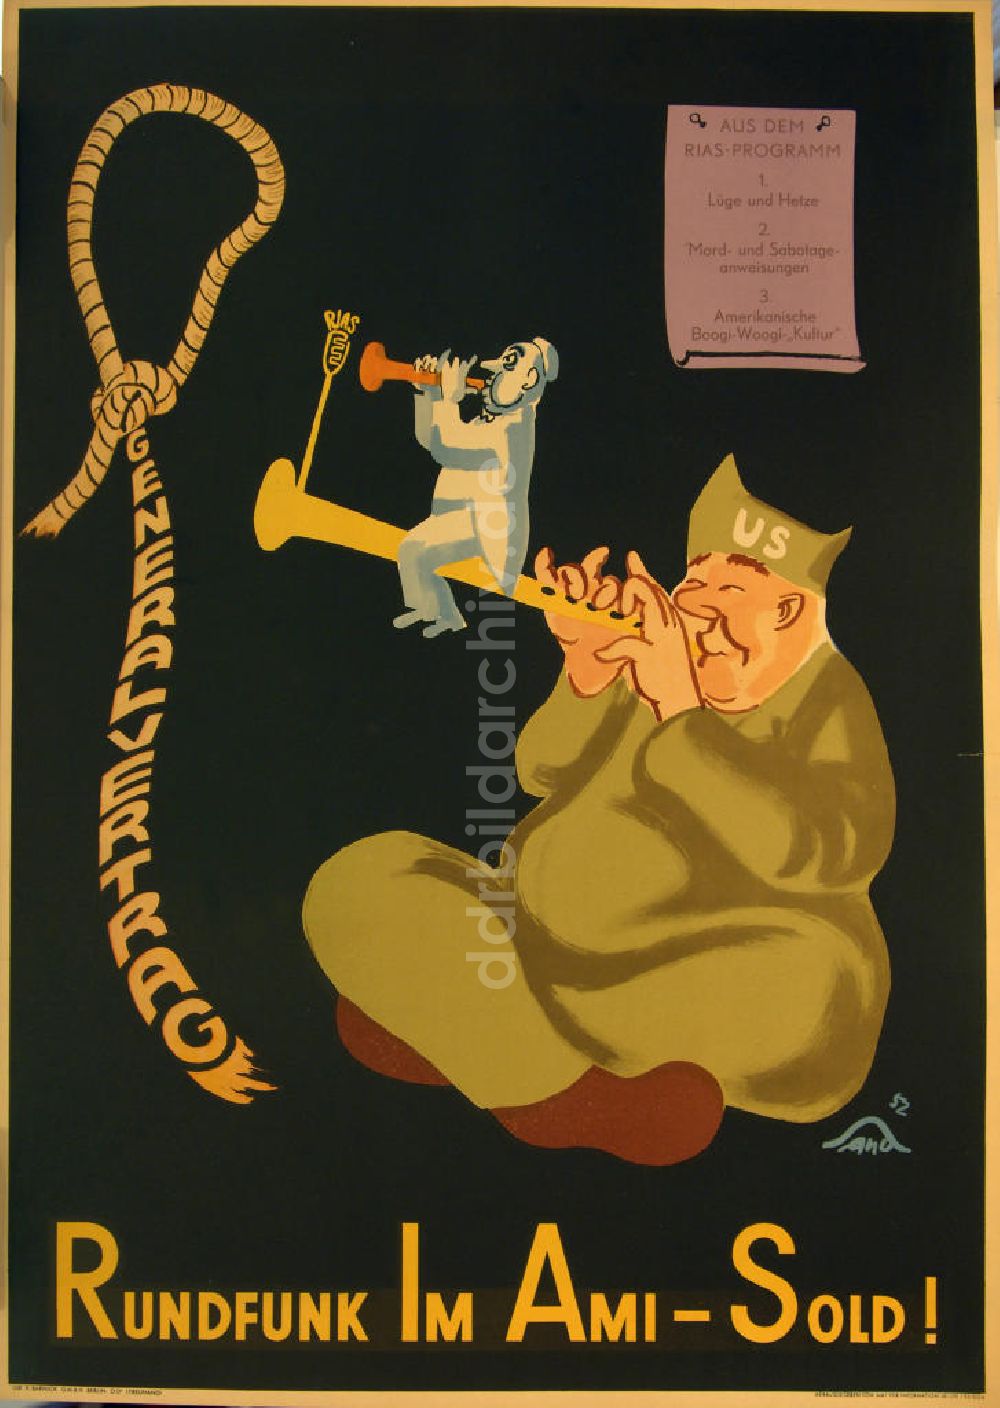 DDR-Bildarchiv: Berlin - Plakat von Herbert Sandberg RIAS - Rundfunk im Ami-Sold aus dem Jahr 1952